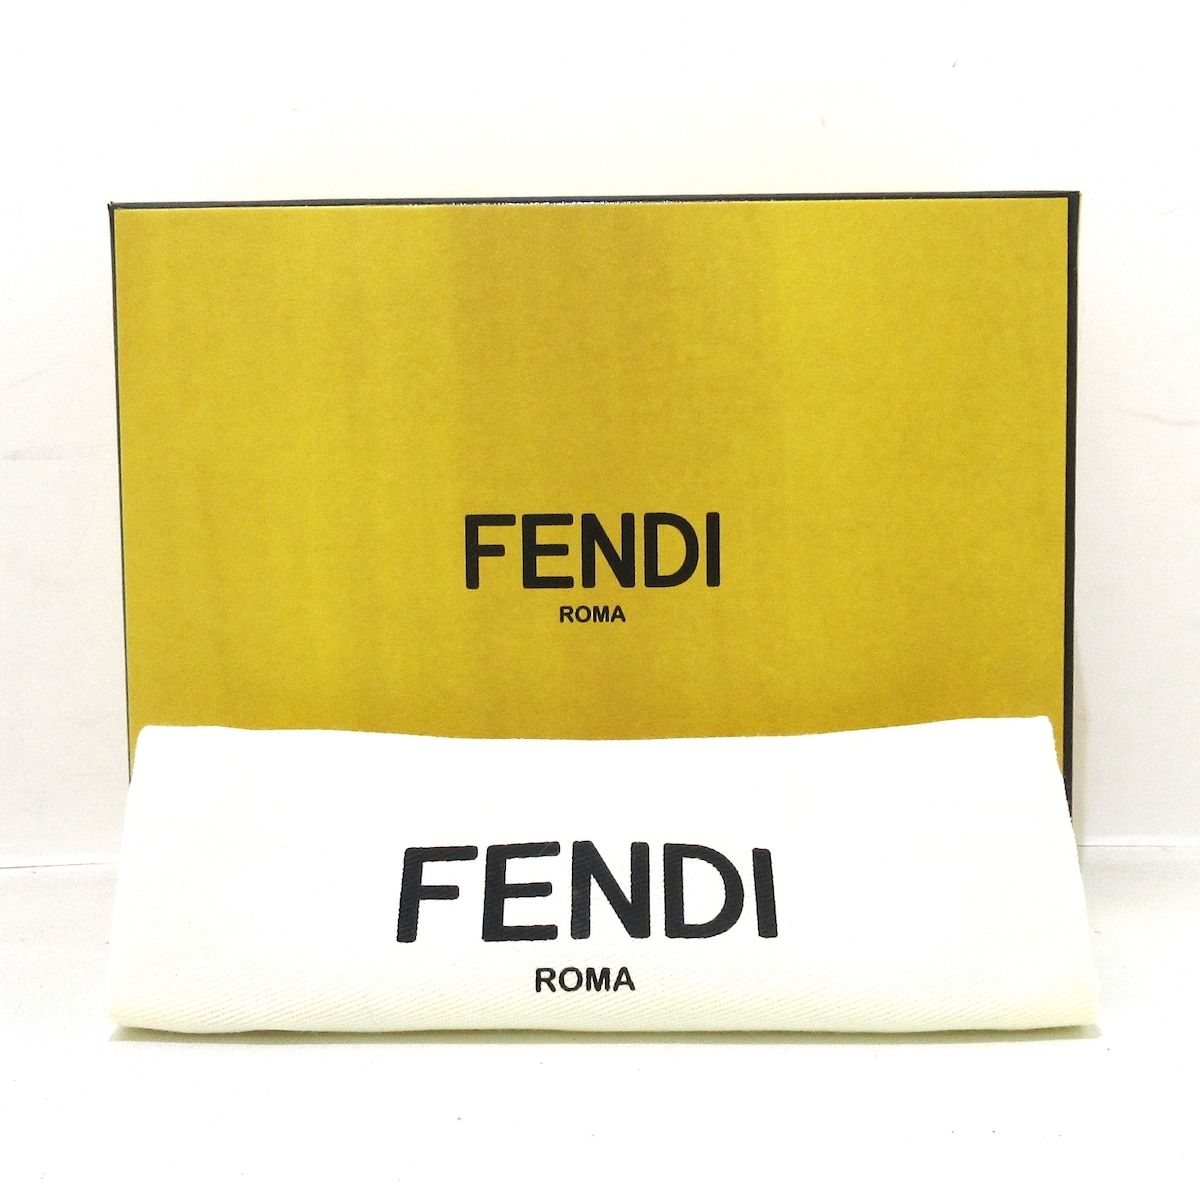 FENDI(フェンディ) 2つ折り財布美品  ピーカブー 8M0438 ネイビー レザー